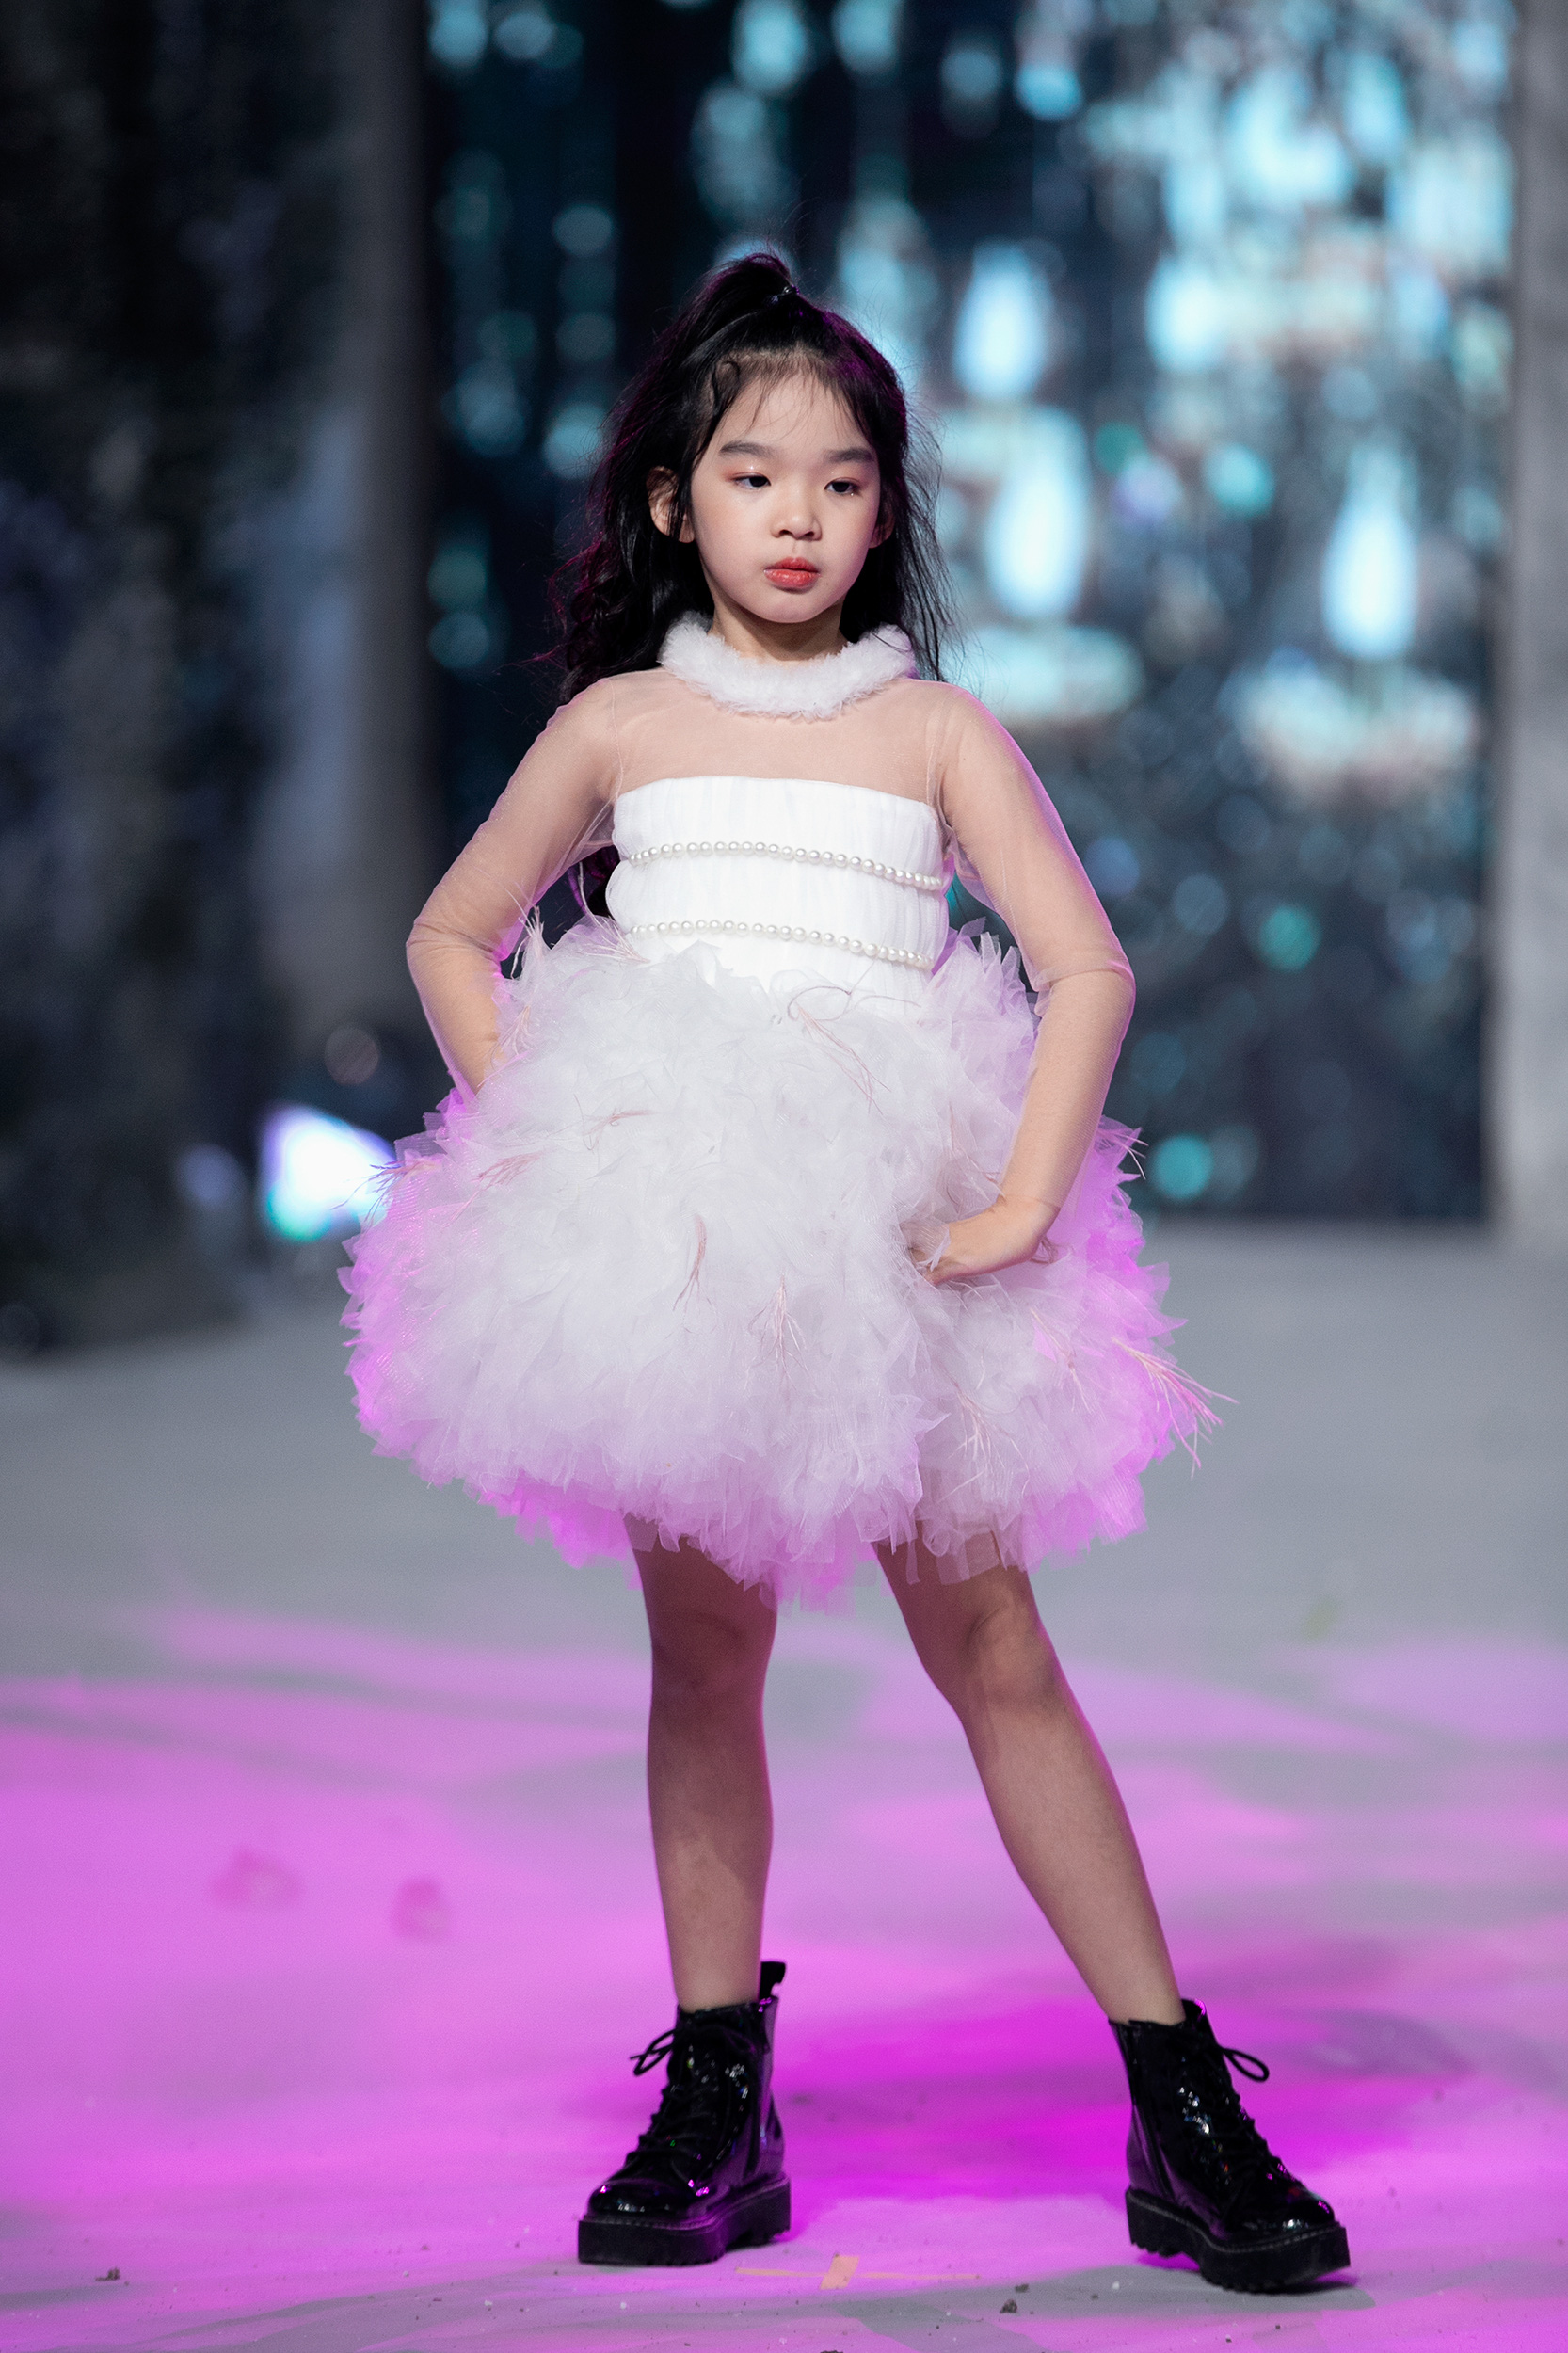 Con gái Xuân Lan diễn thời trang giữa tiết trời lạnh giá của Hà Nội - Ảnh 2.